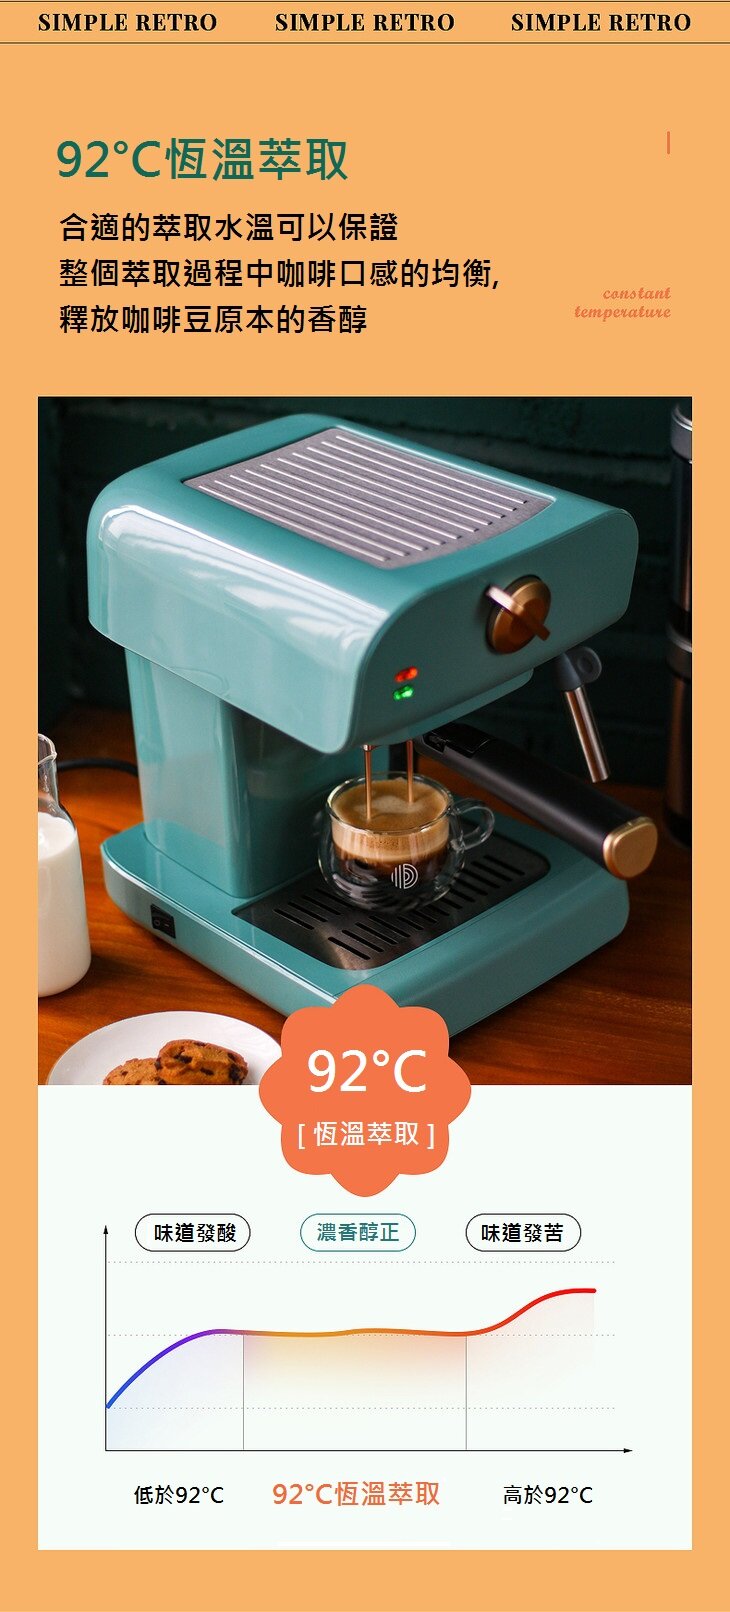 Petrus - PE3320 Retro Espresso Machine Italian semi-automatic coffee machine